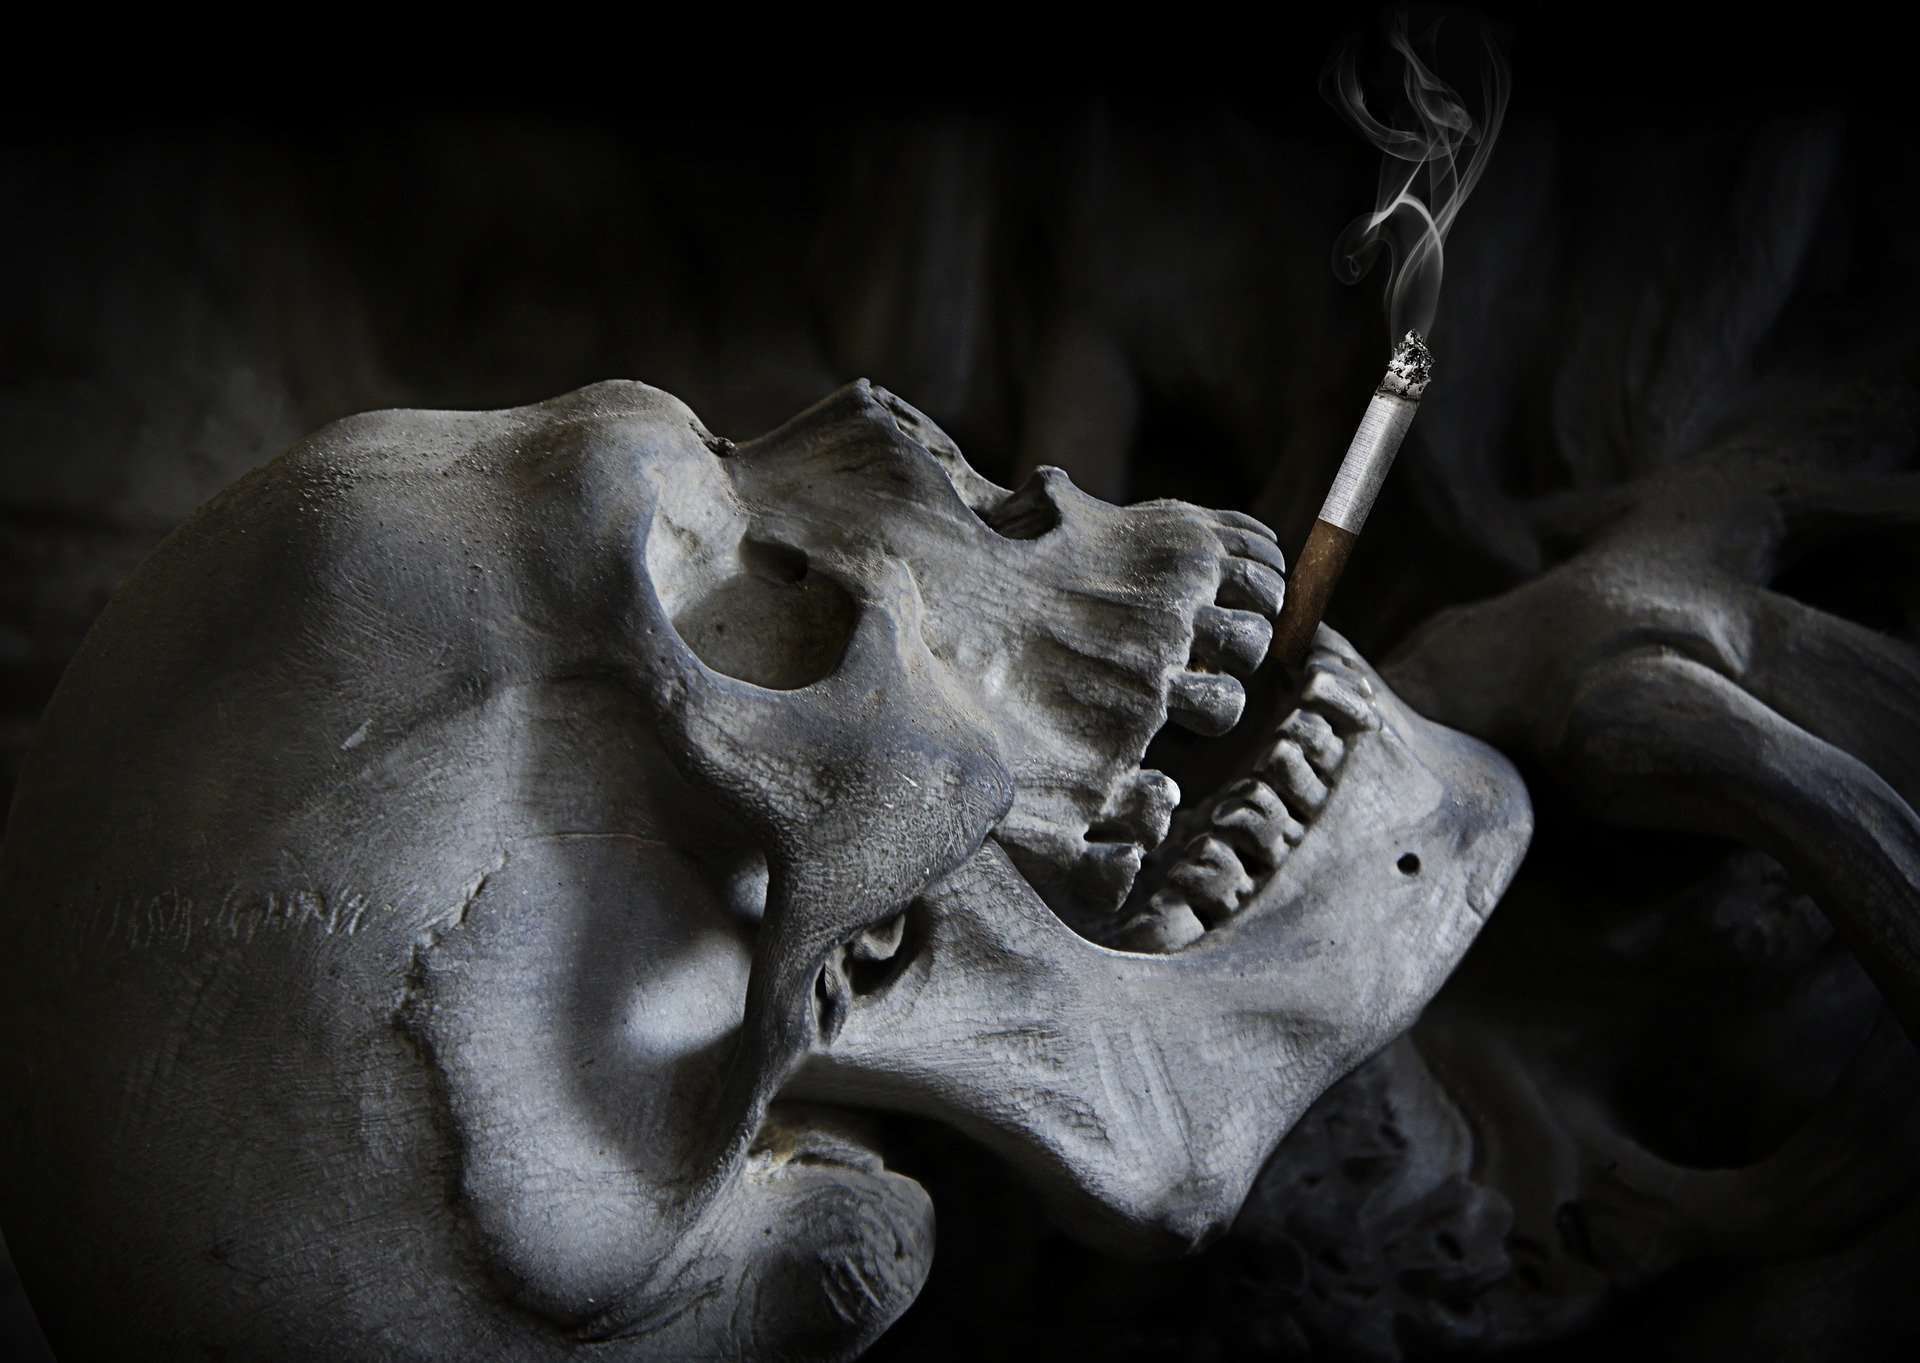 Tabac : des risques spécifiques sur l'appareil respiratoire - CNCT